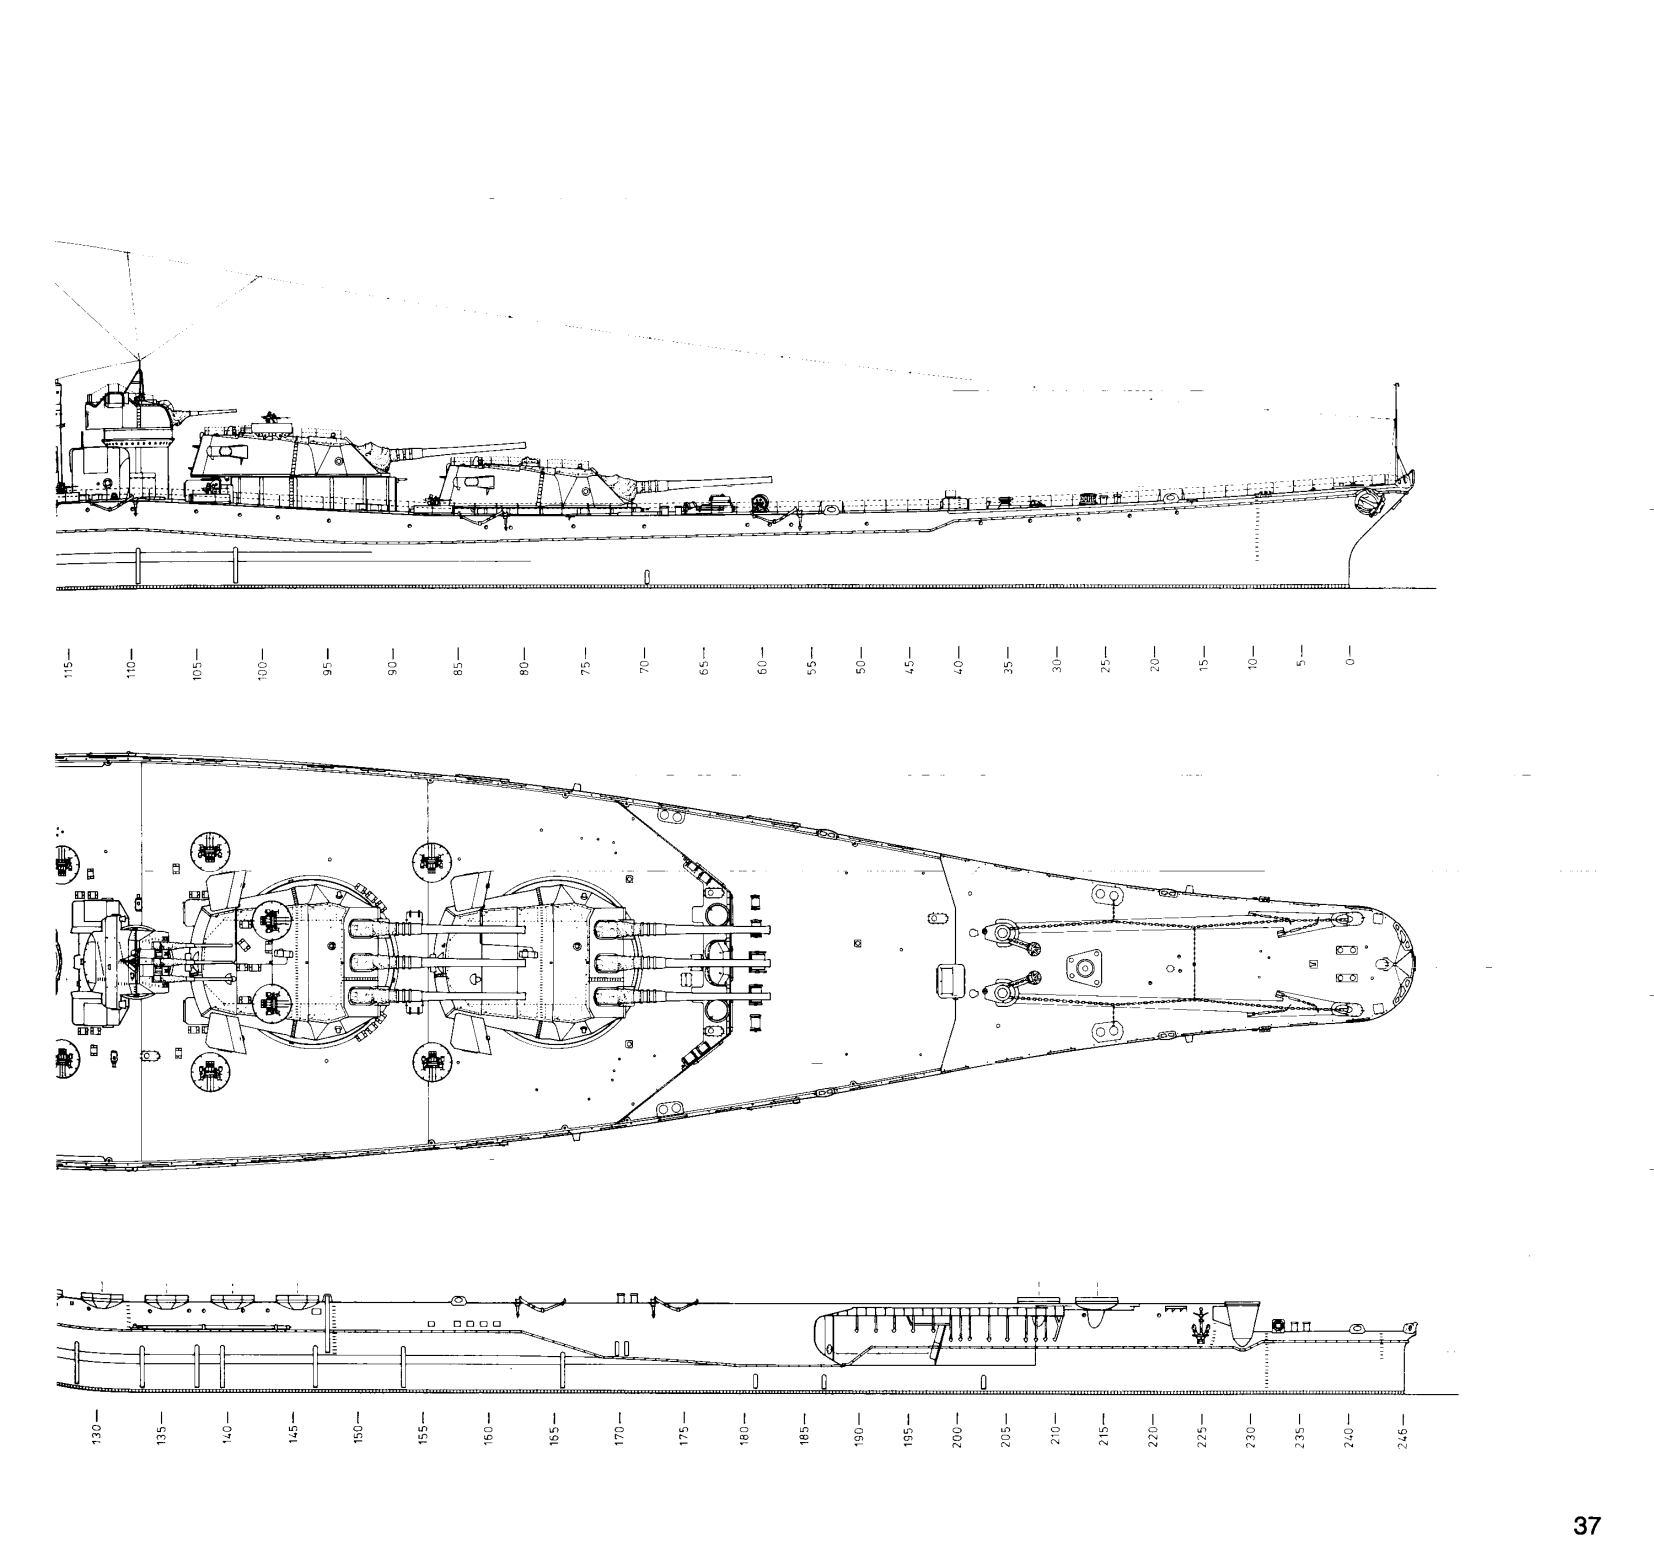 战列舰内部结构图图片